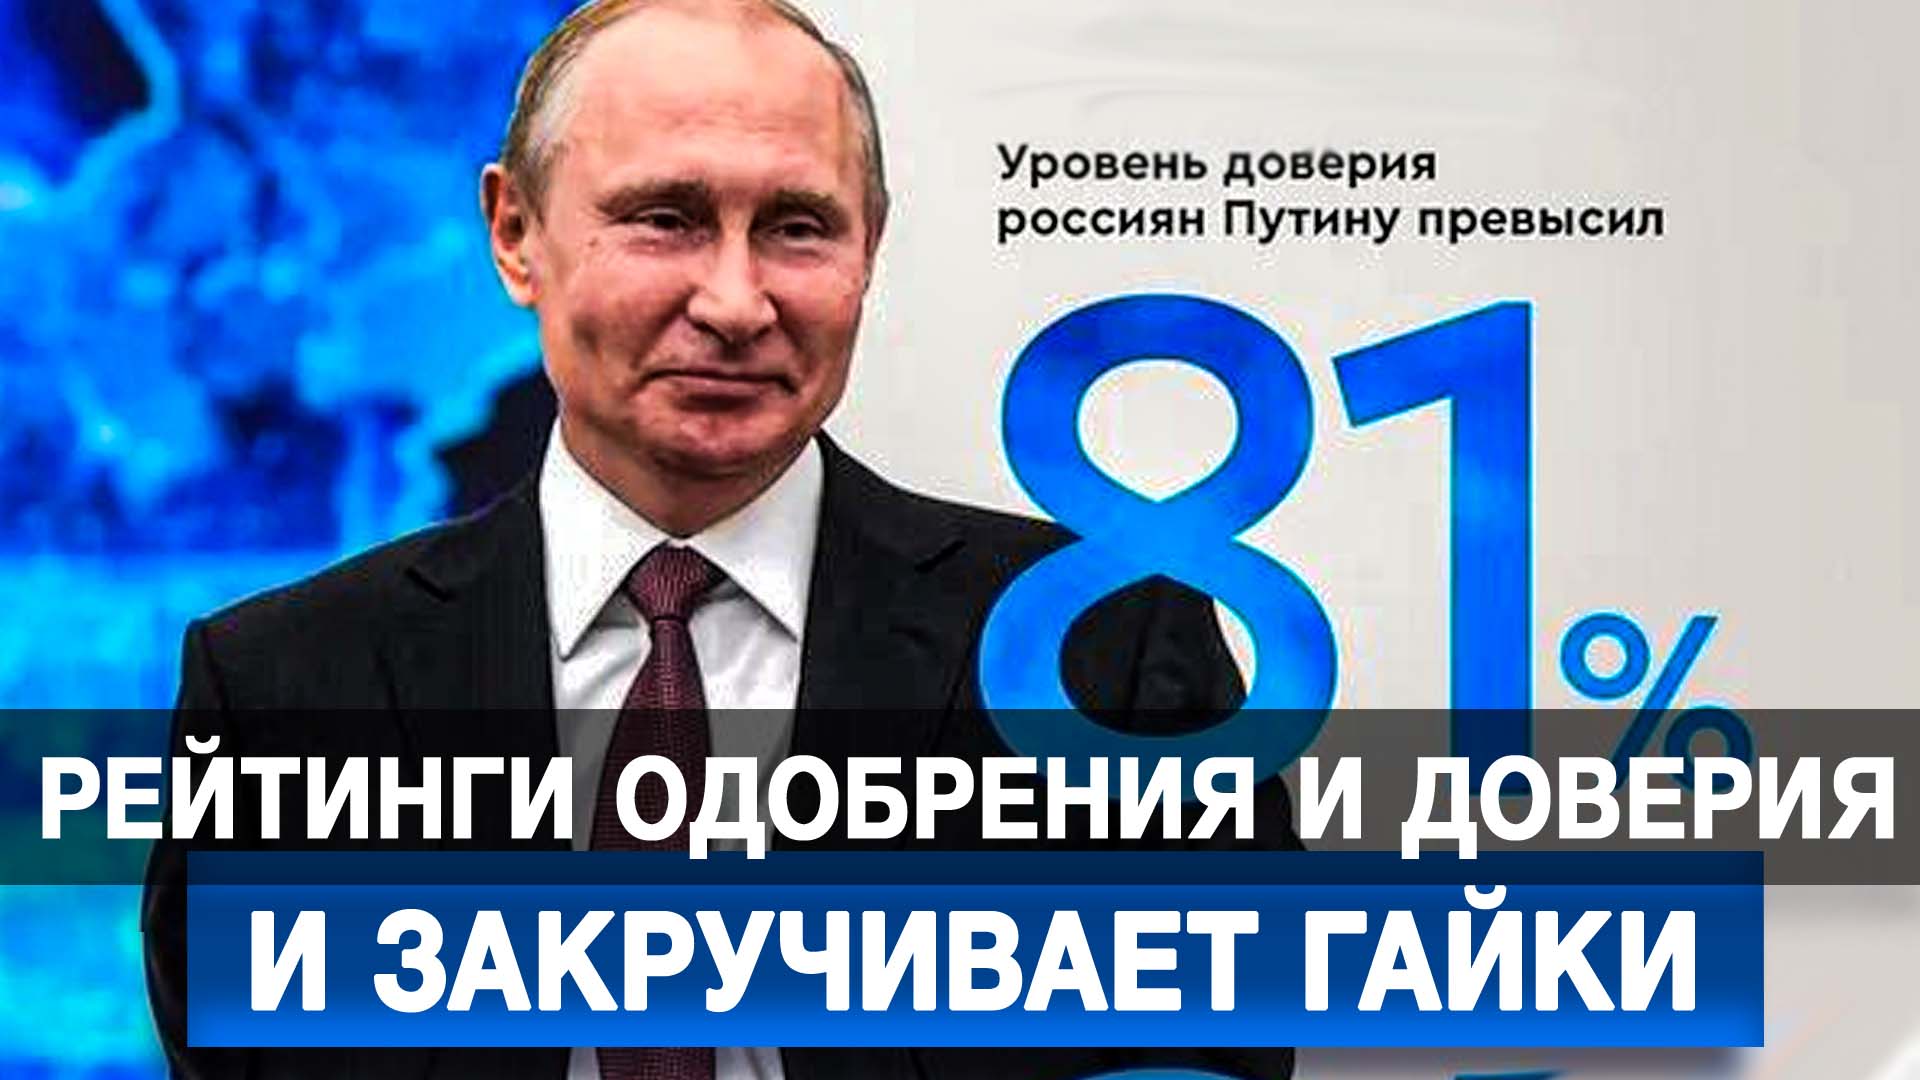 Рейтинги одобрения и доверия Путину превысили 80%